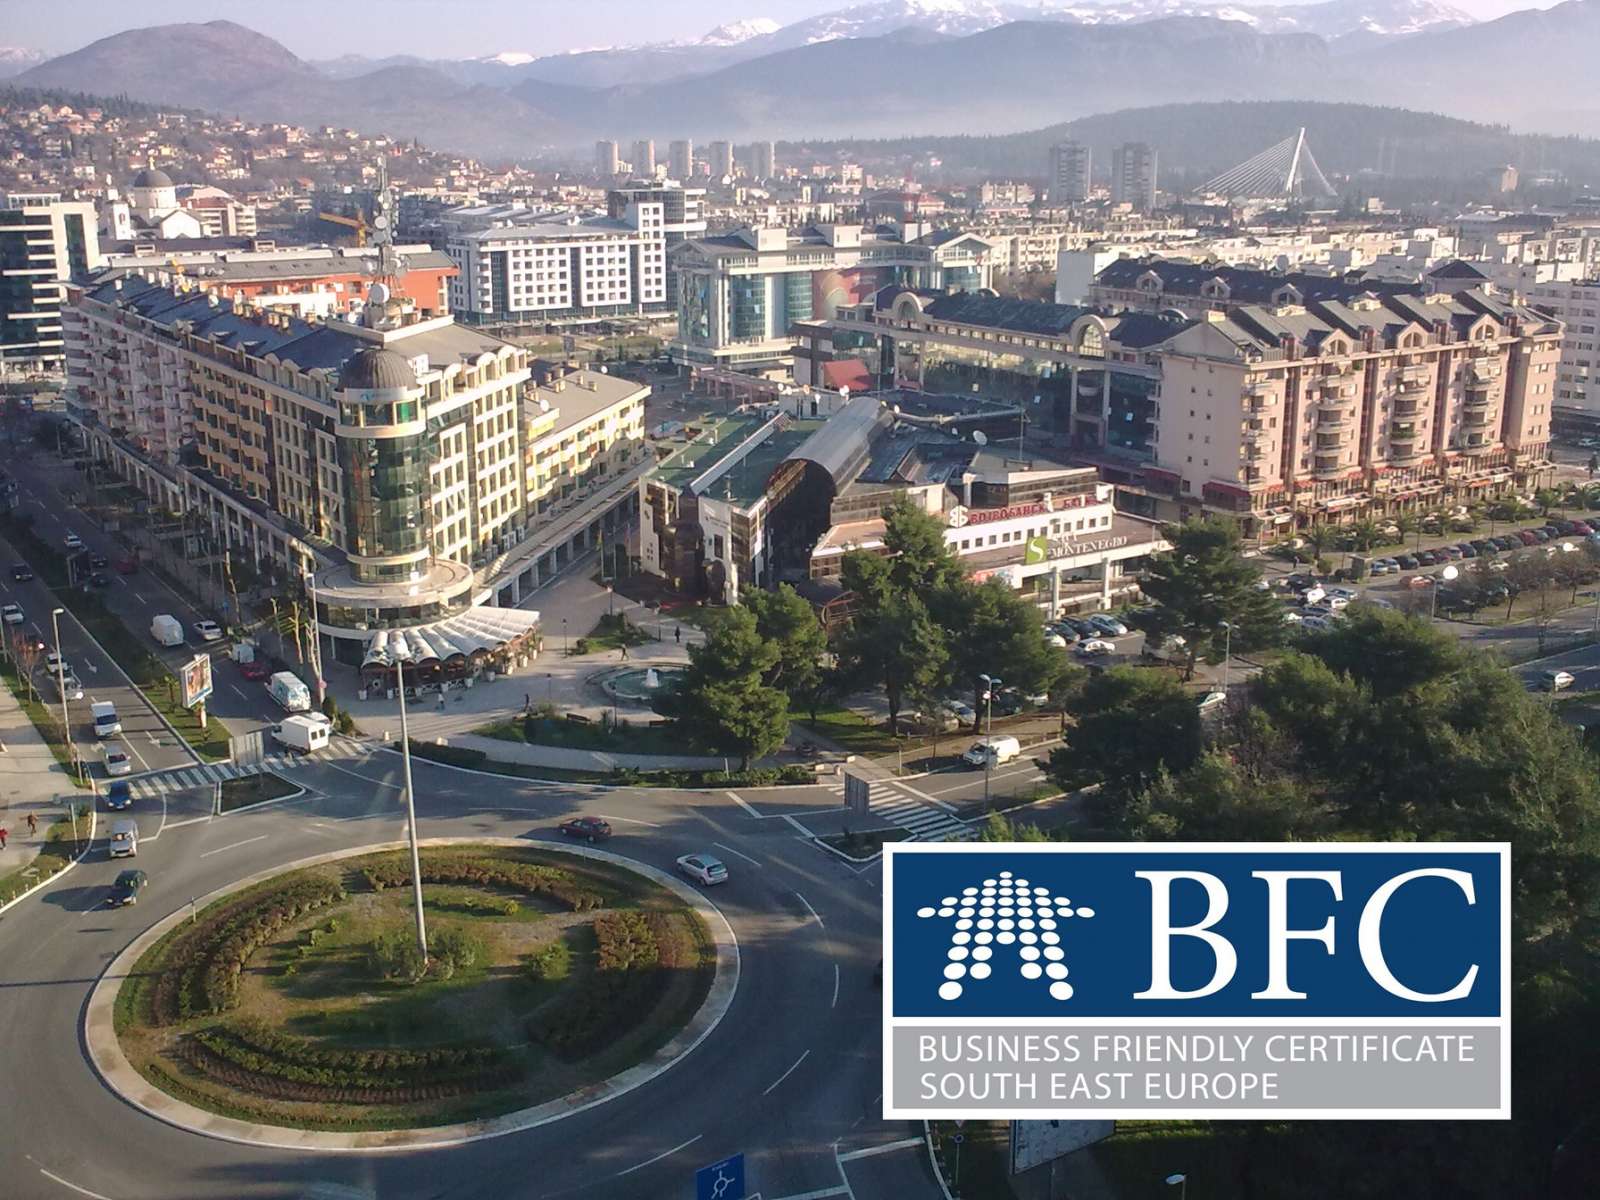 Glavni grad dobio BFC sertifikat; Podgorici status sertifikovane lokalne samouprave za povoljno poslovno okruženje